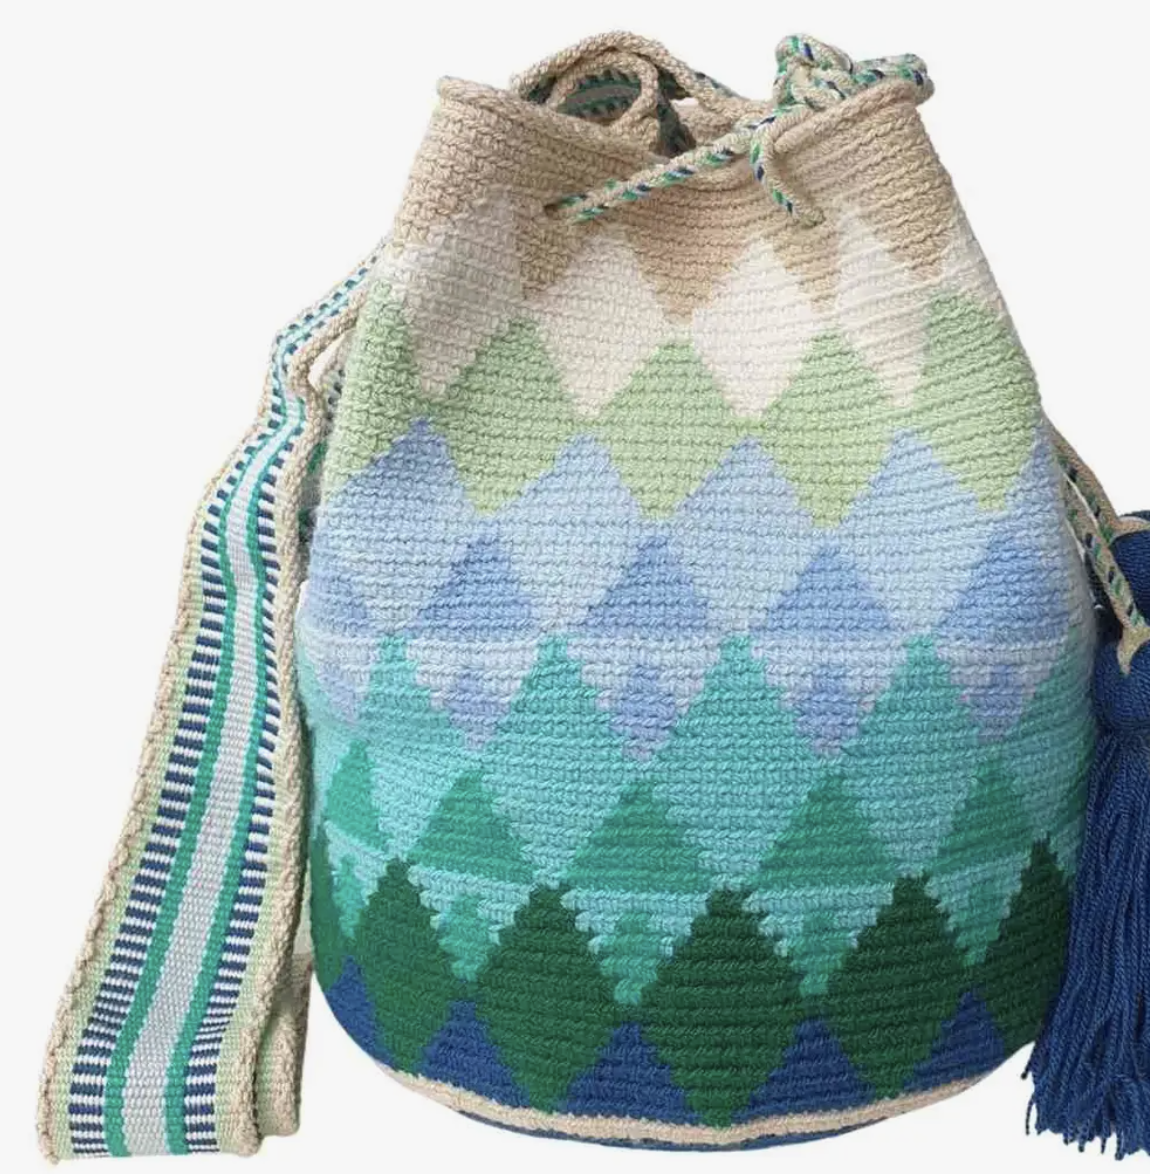 El Junque' del Rio Crochet Bag